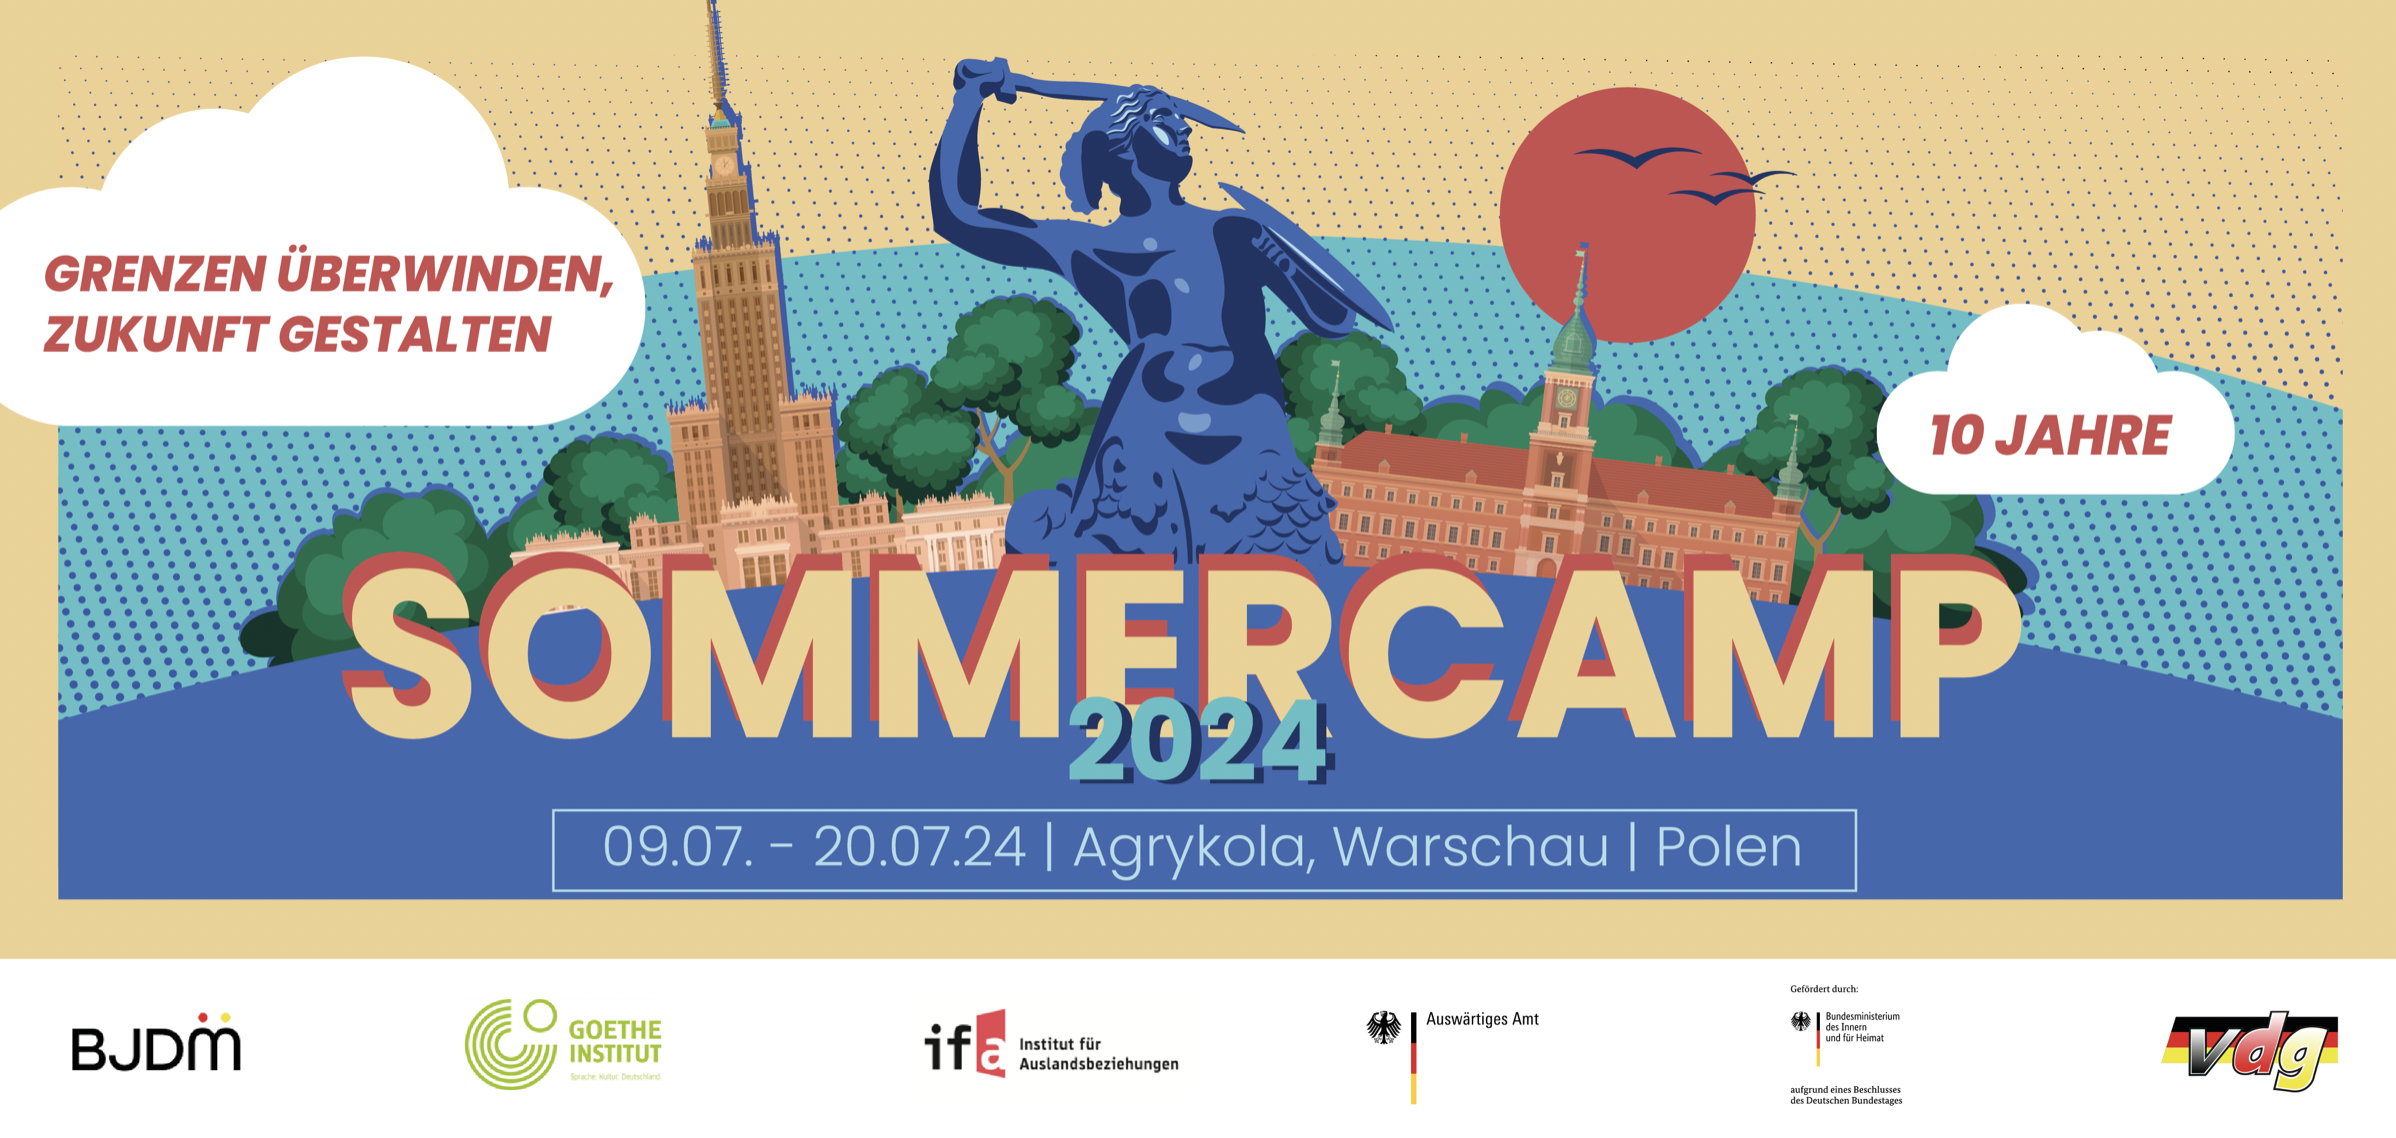 Sommercamp 2024: Grenzen überwinden und Zukunft gestalten